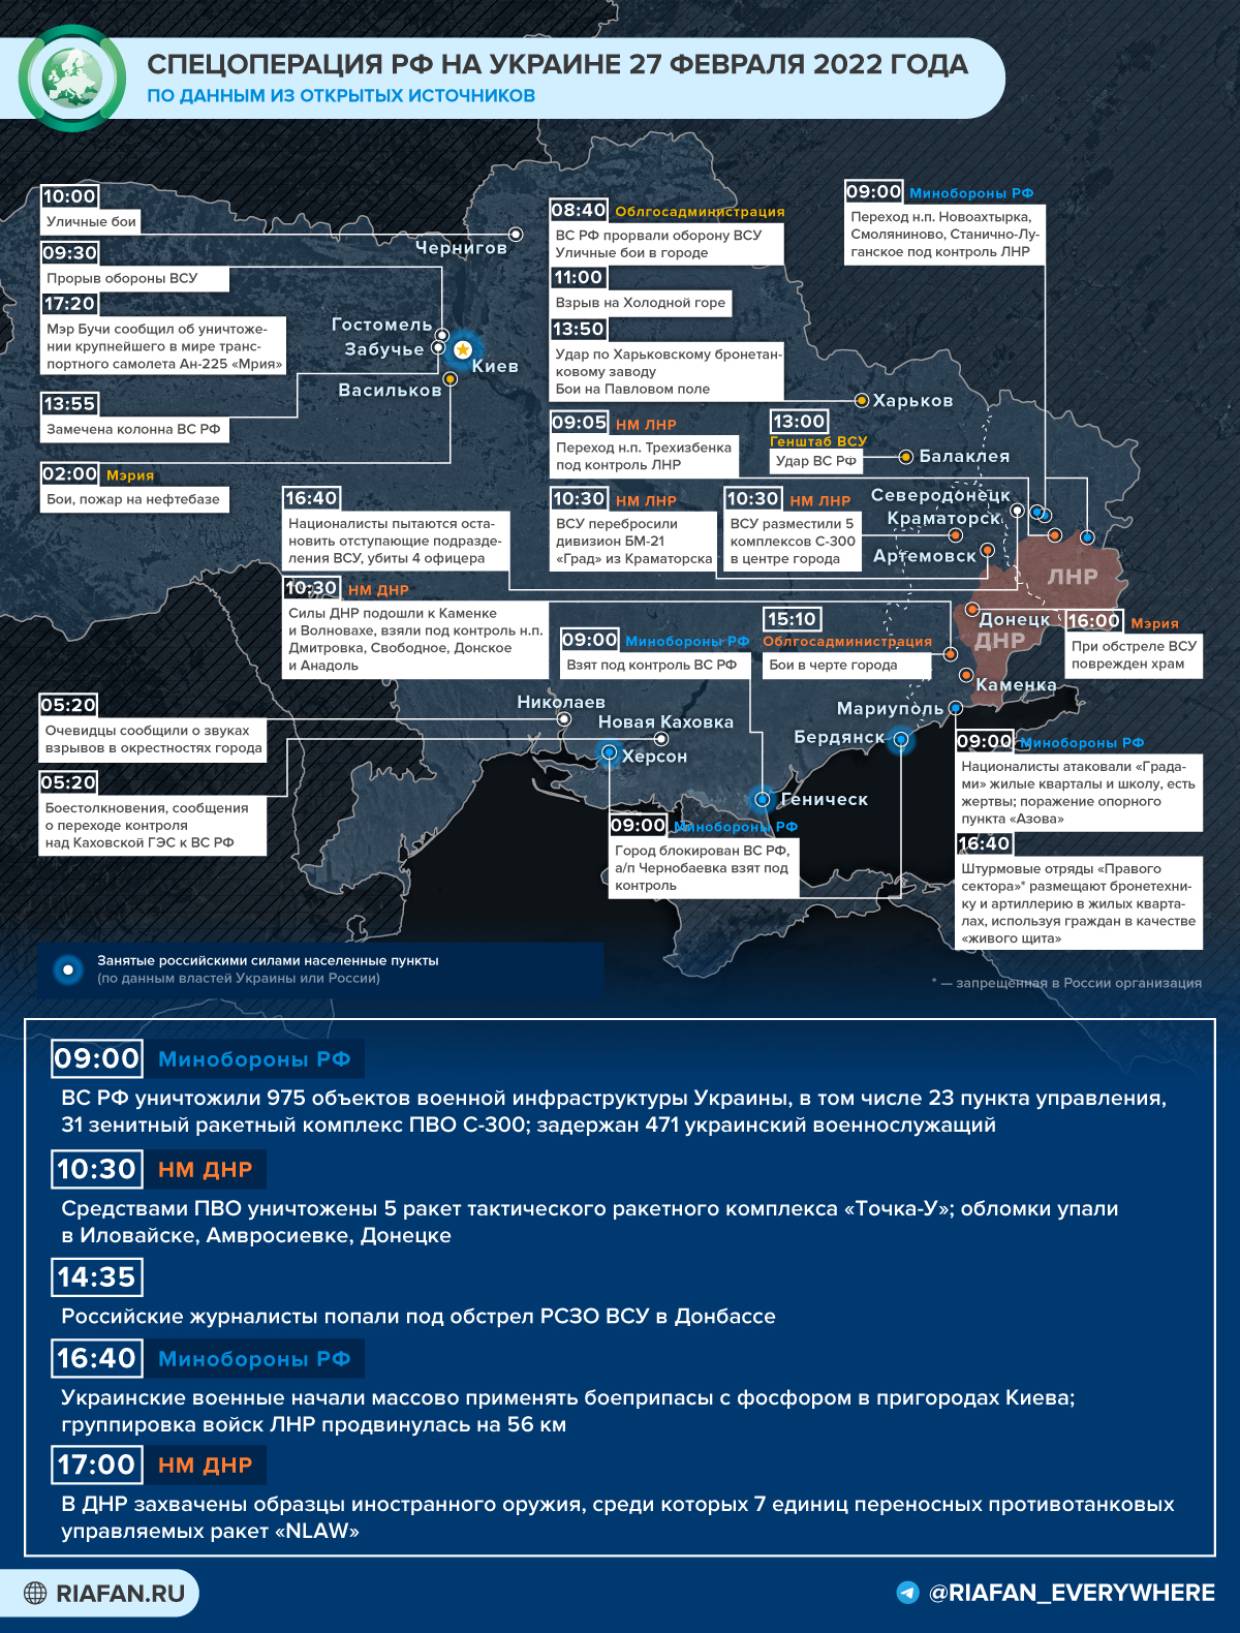 Прорыв в Харьков и осада Мариуполя: хроника событий на Украине 27 февраля